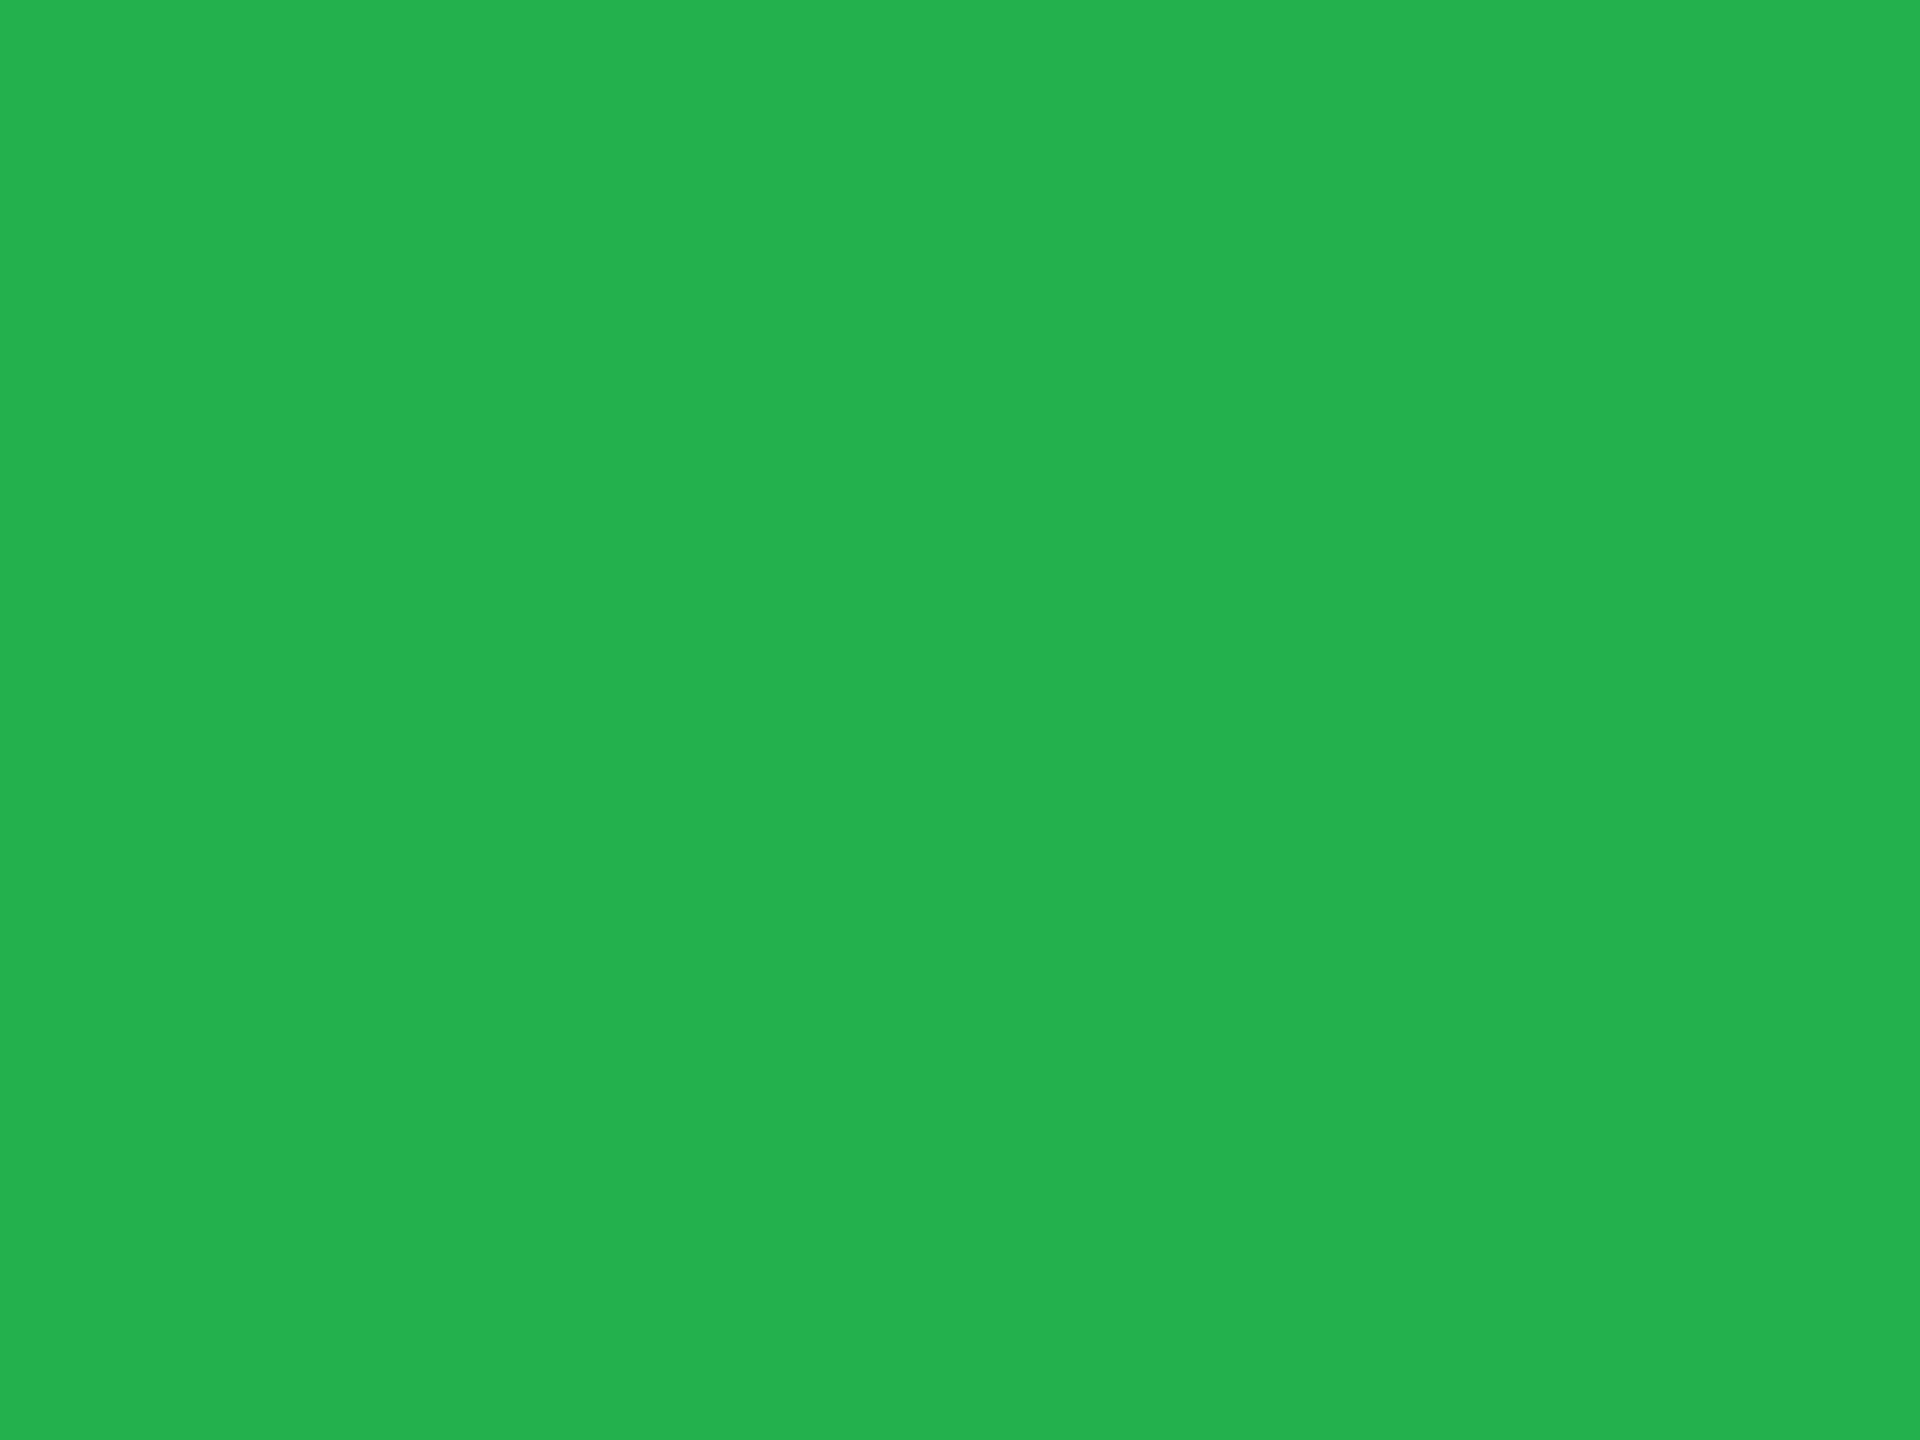 Fondode Pantalla De Color Verde Vibrante Sólido. Fondo de pantalla